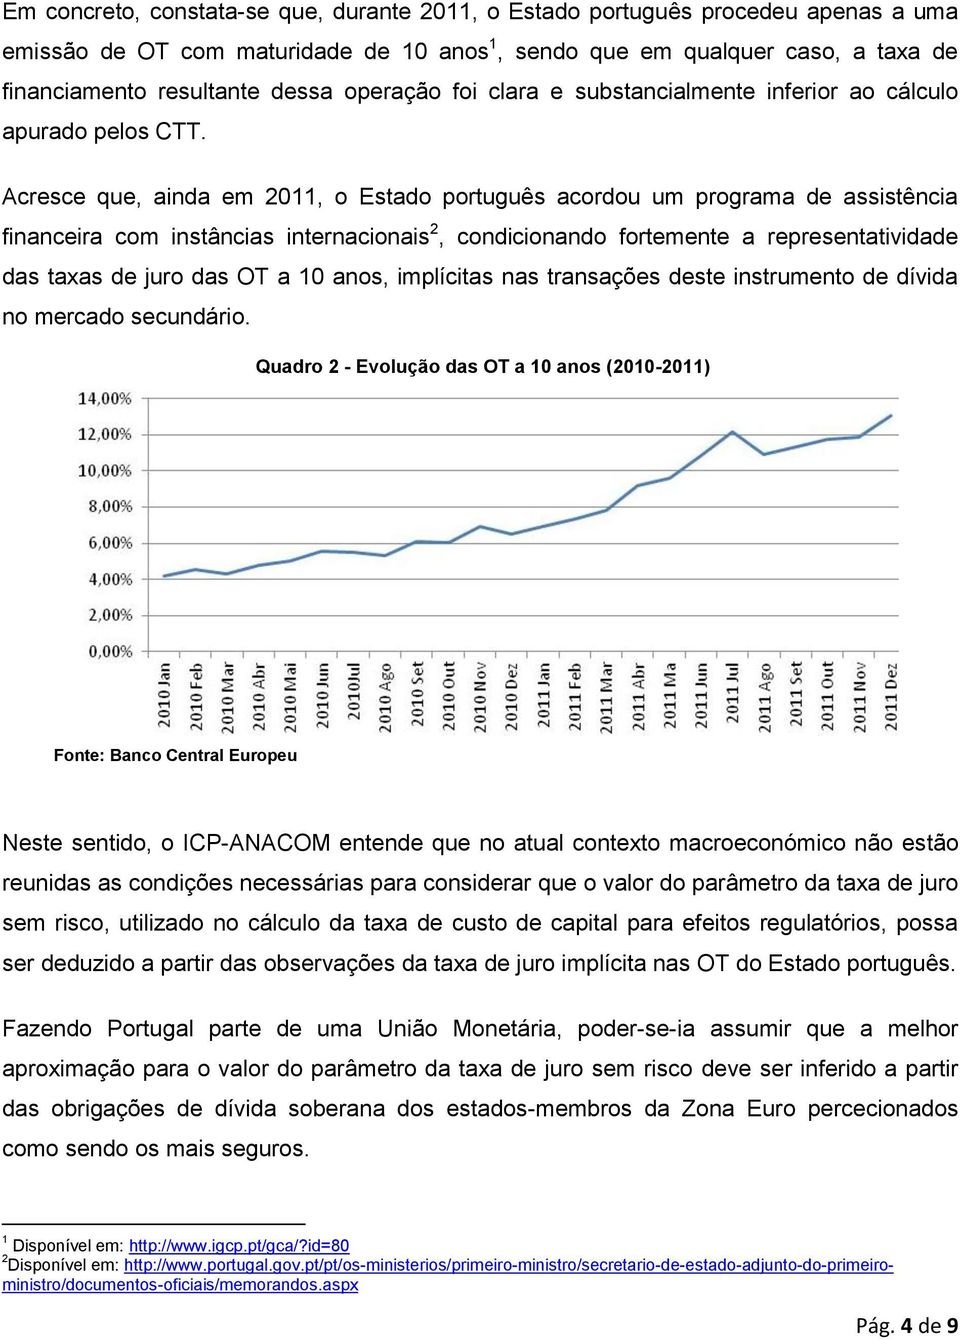 Acresce que, ainda em 2011, o Estado português acordou um programa de assistência financeira com instâncias internacionais 2, condicionando fortemente a representatividade das taxas de juro das OT a